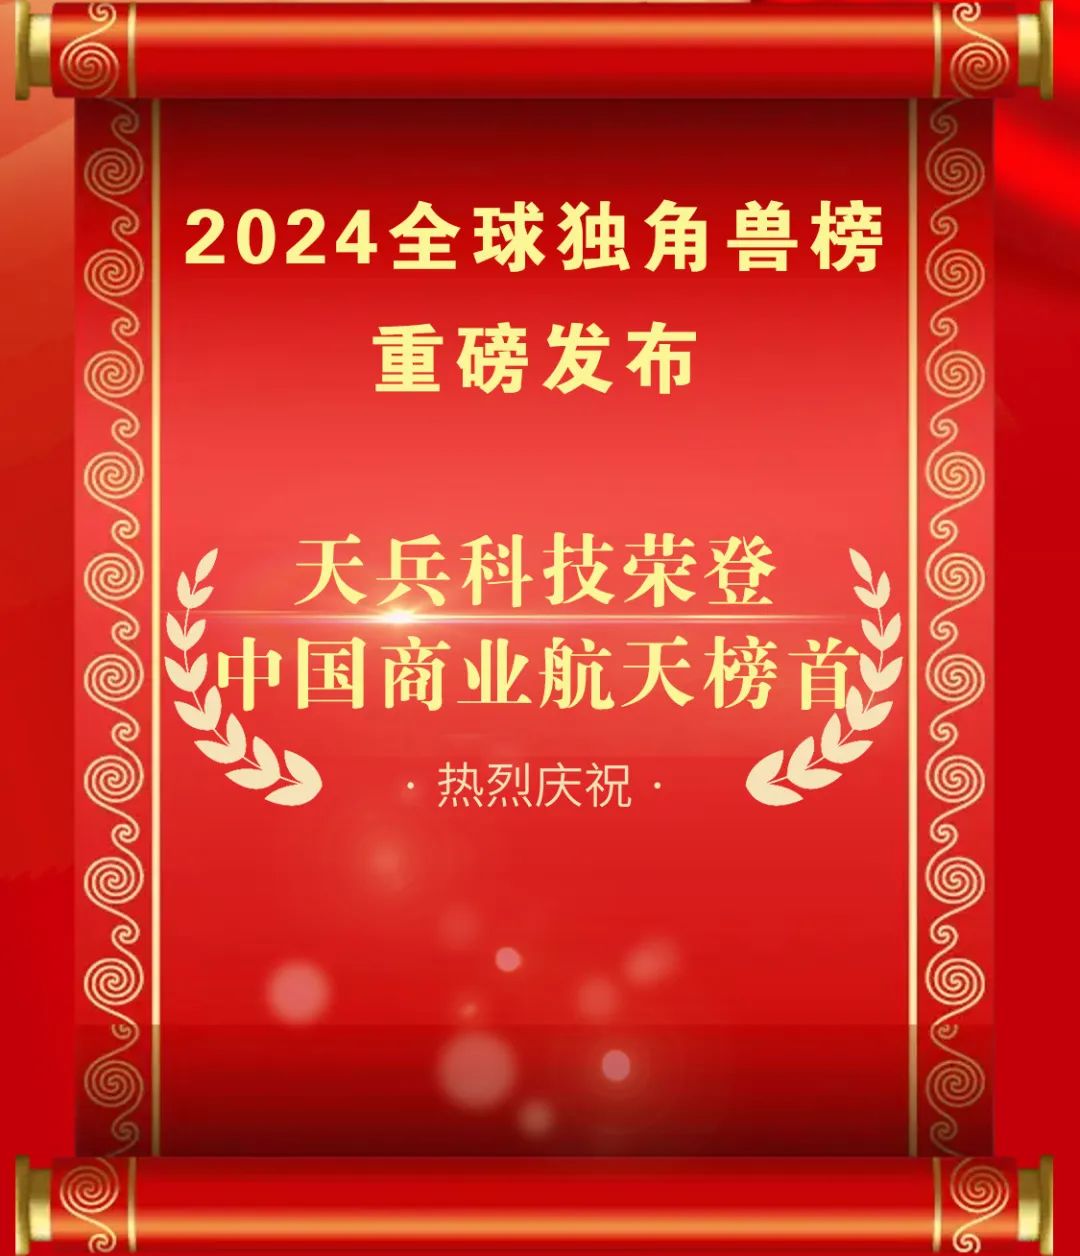 胡润研究院发布《2024全球独角兽榜》天兵科技荣登中国商业航天榜首